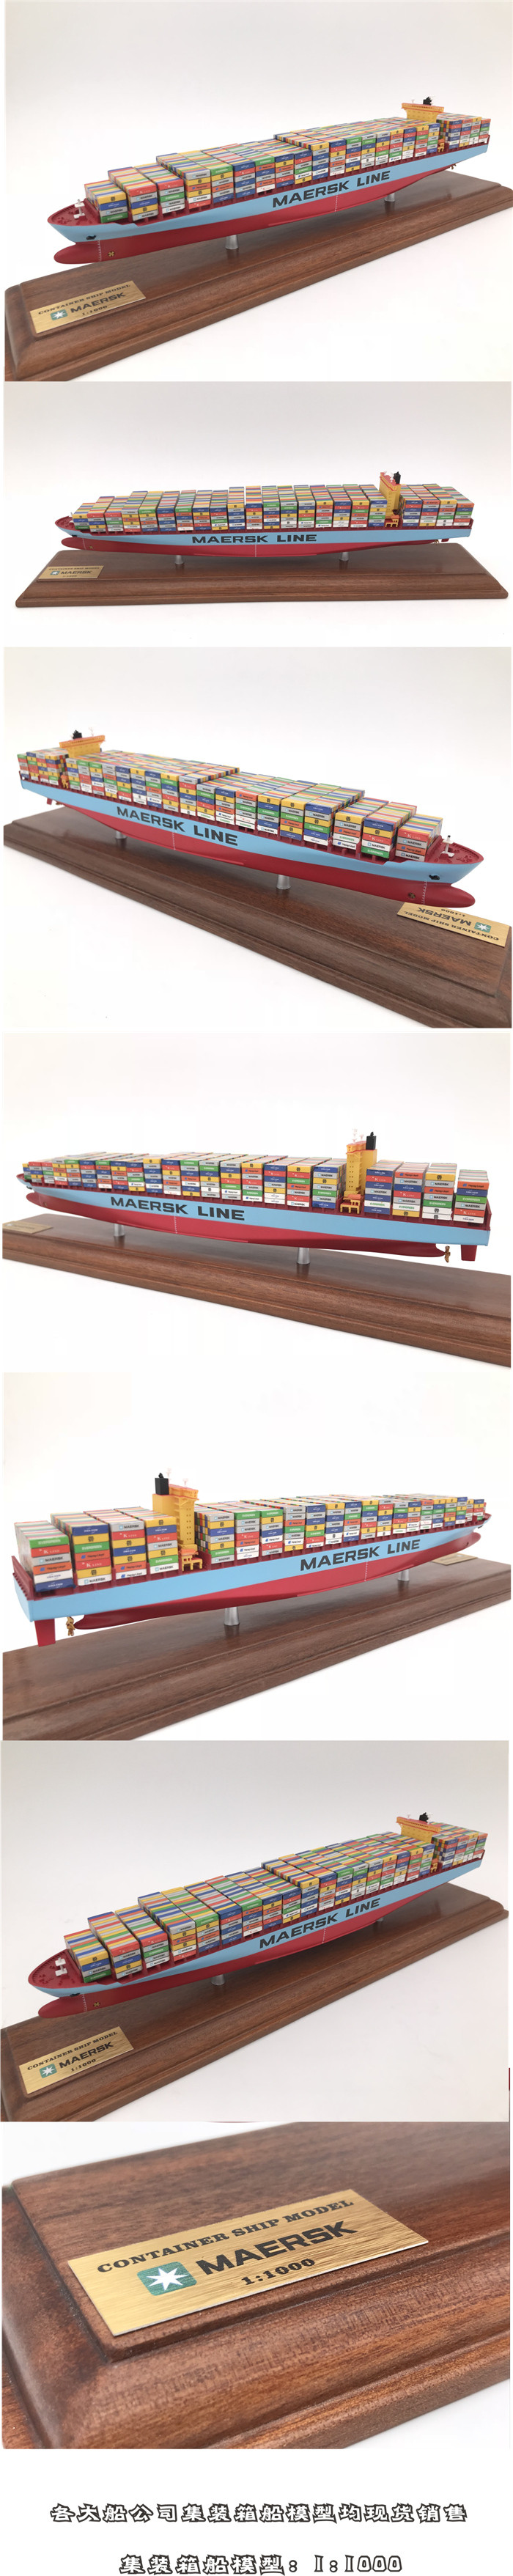 海艺坊集装箱船模型工厂 批量生产集装箱船模型 货柜船模型批发定制 集装箱船模型定做